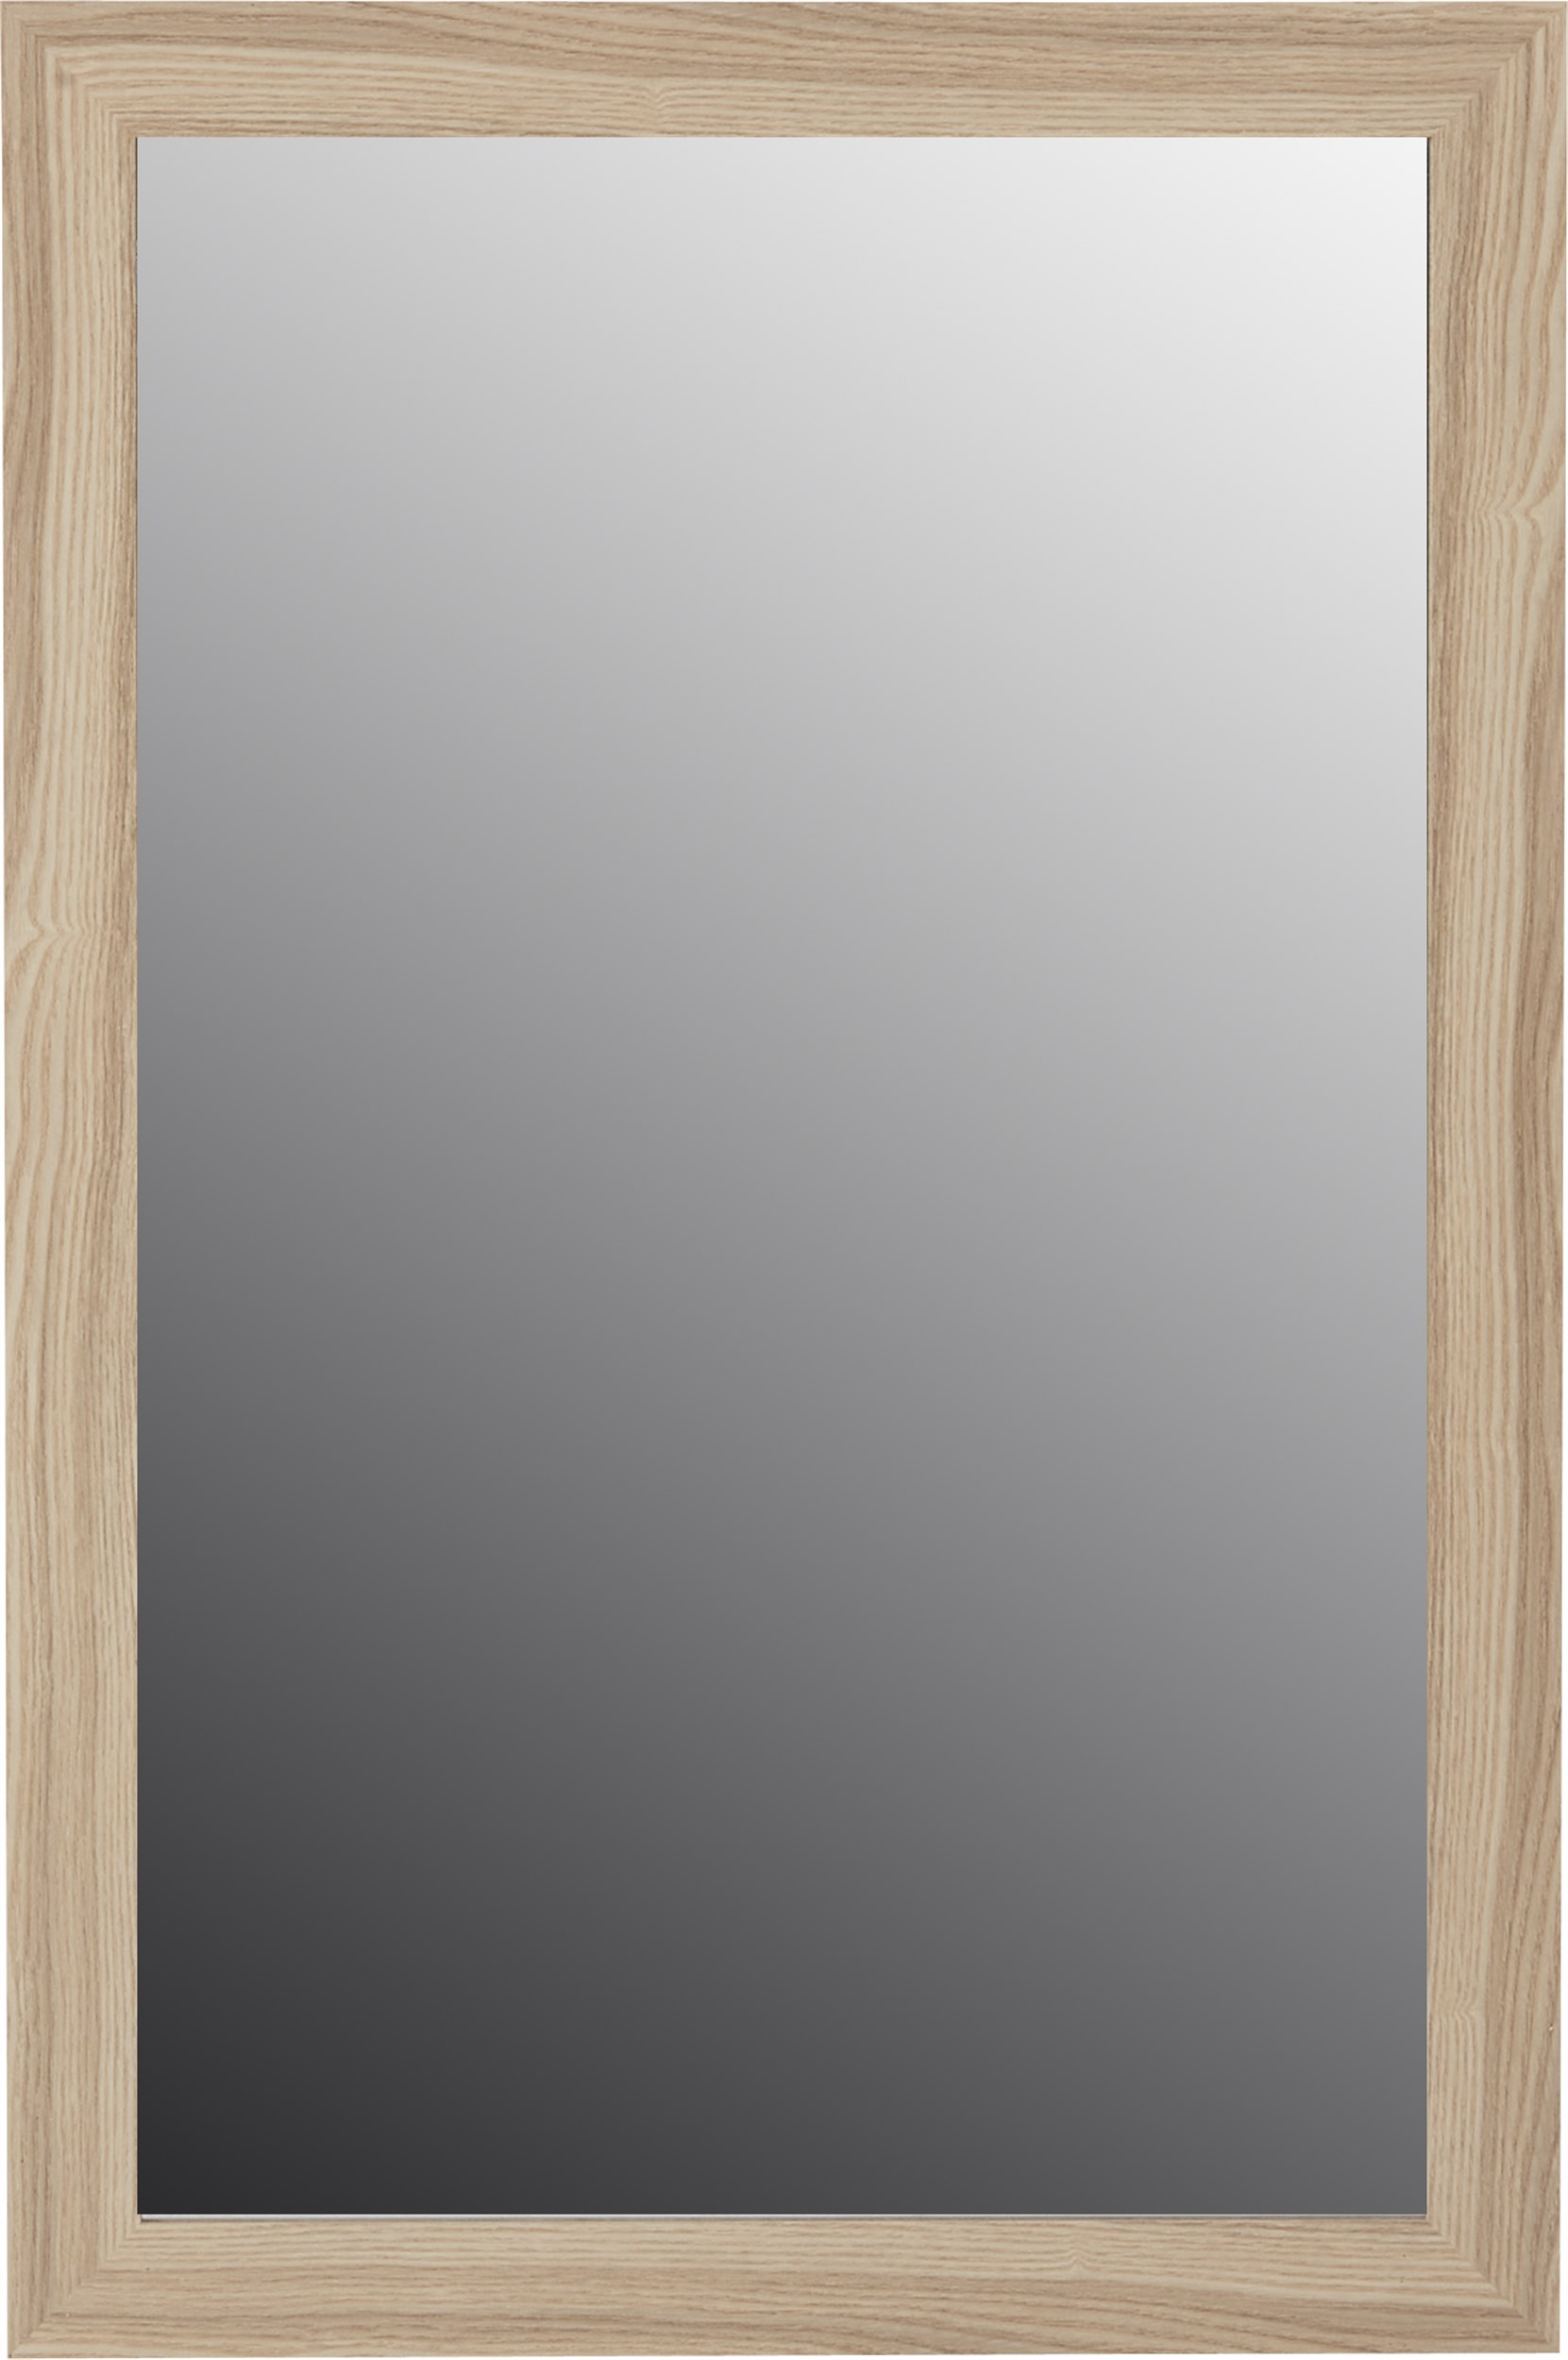 Køb Adeline spegel 58 x 88 cm